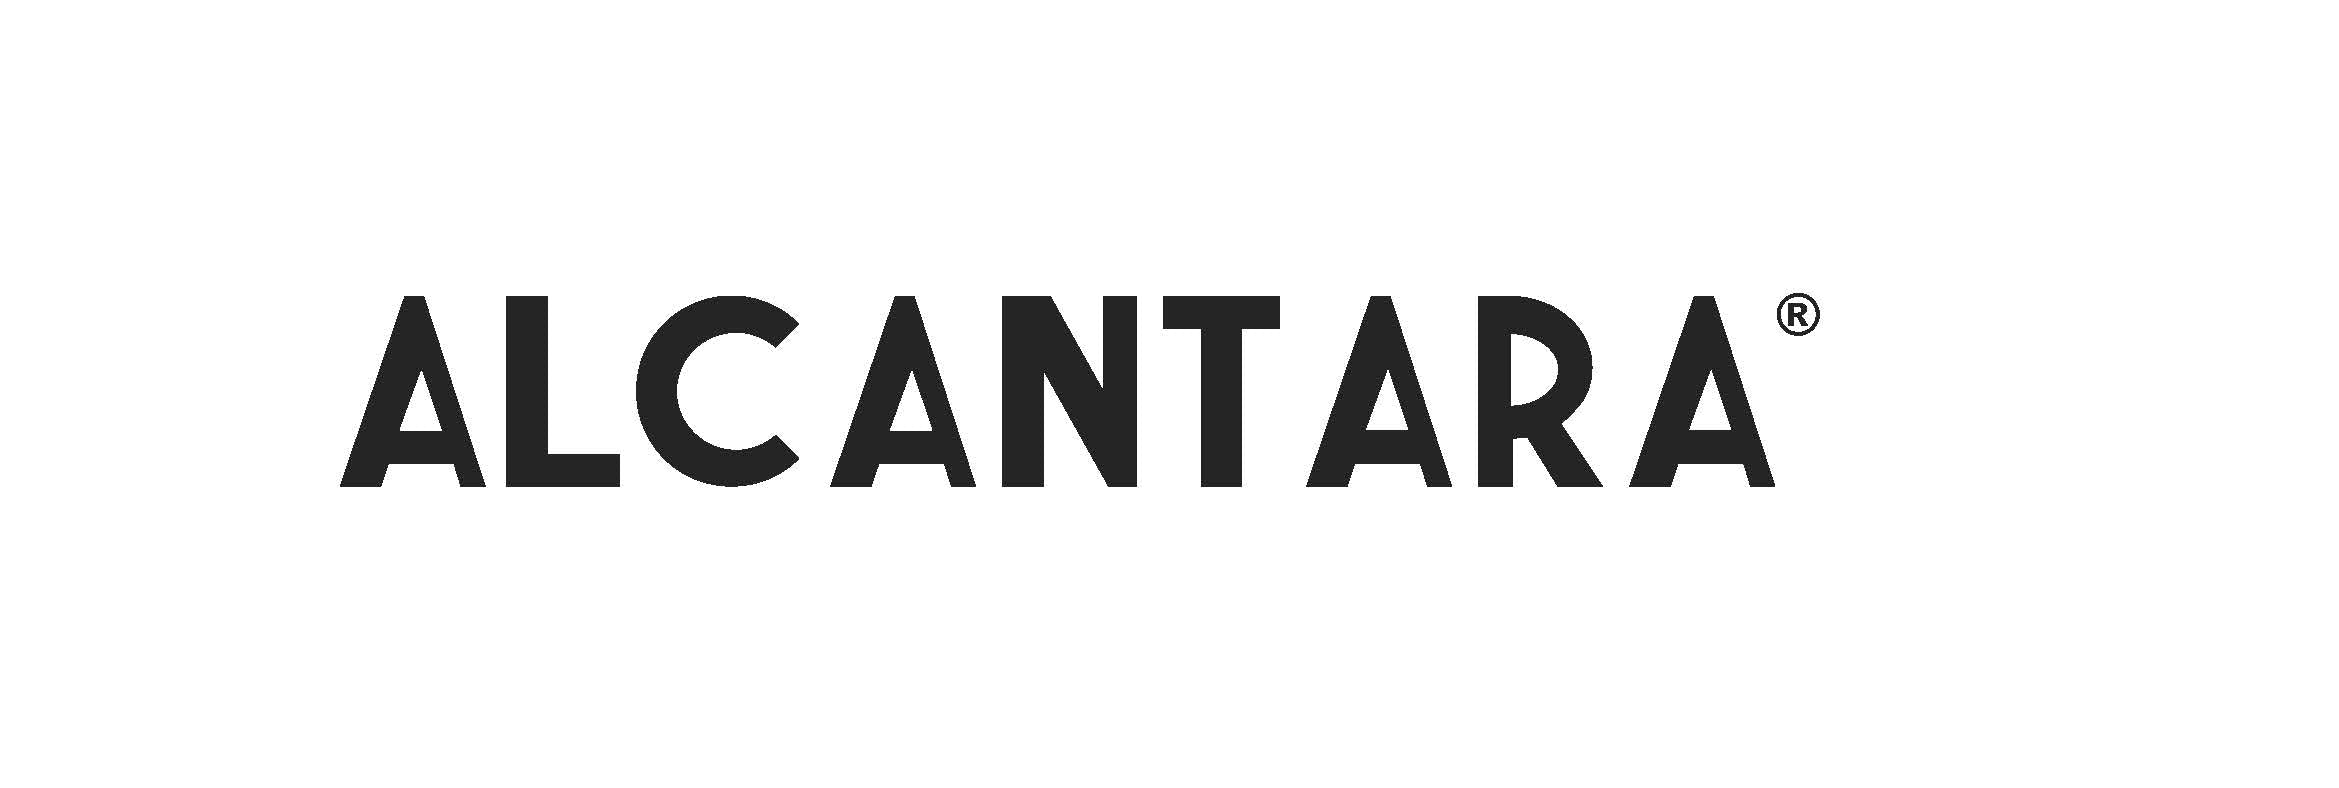 Volonic_Materials_Alcantara_Logo